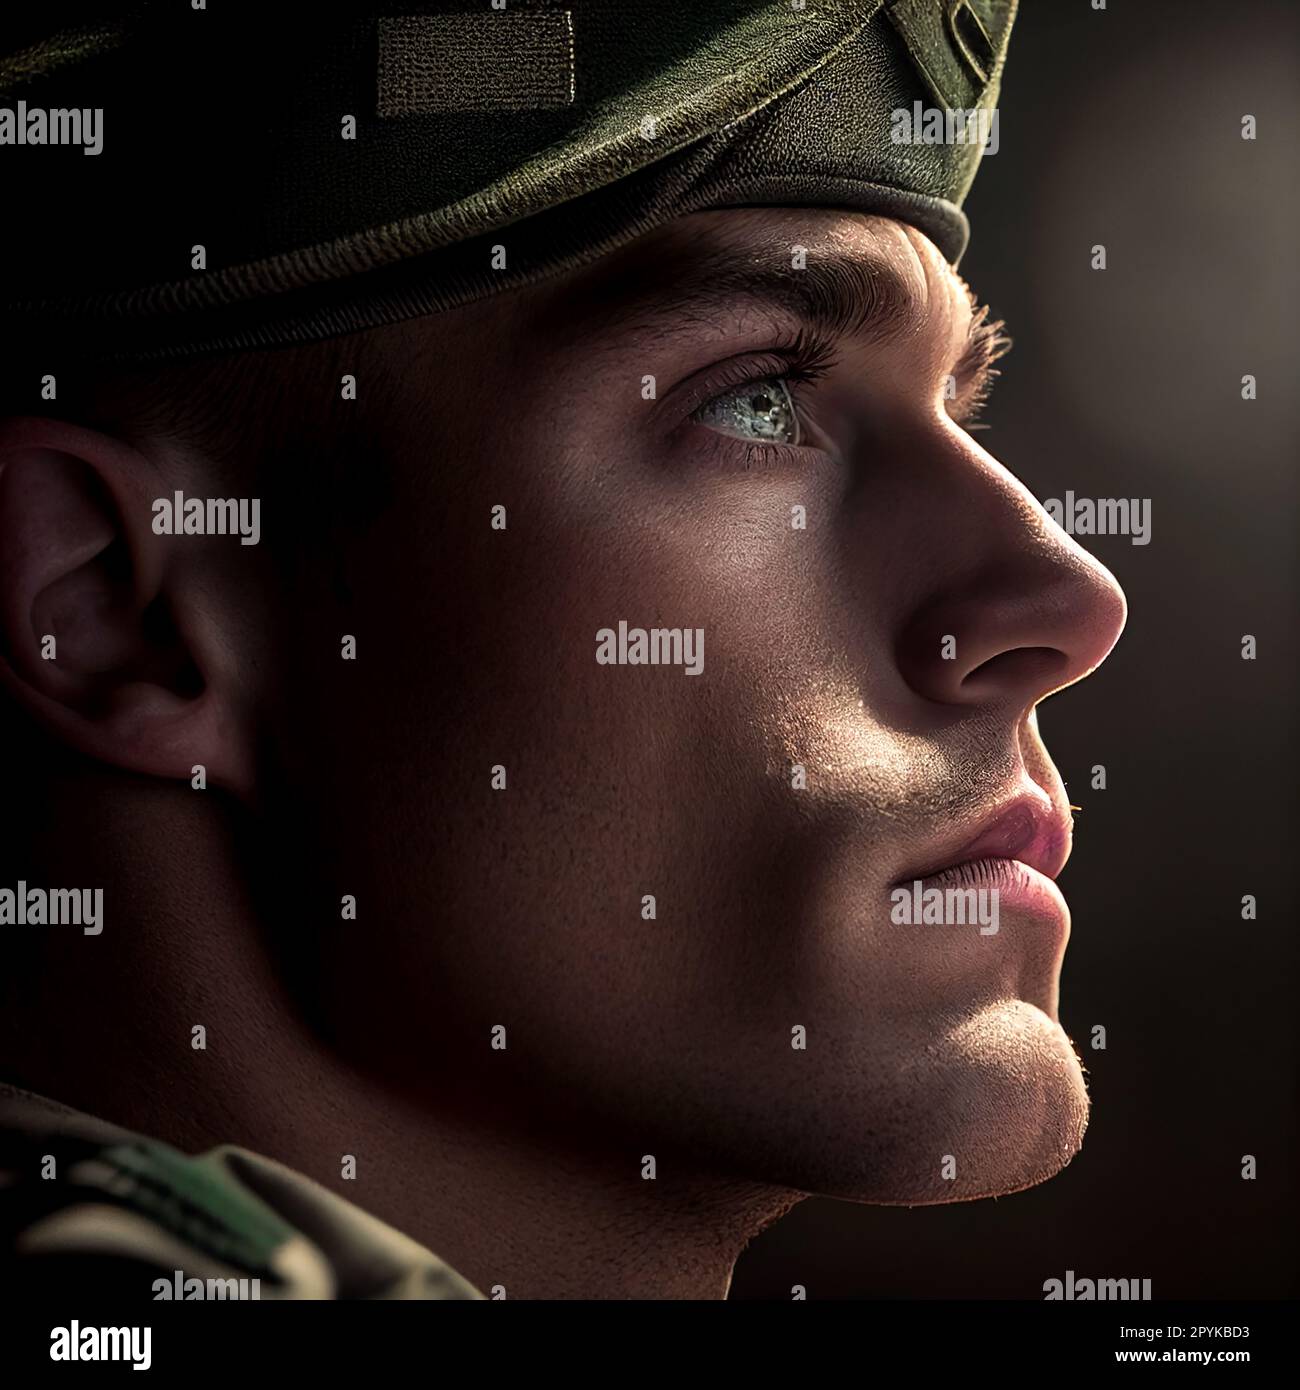 Soldat schaut Licht an, Special Forces United States in Camouflage Uniformen Studio-Aufnahme. Shemagh-Schal, bemaltes Gesicht. Schwarzer Hintergrund, unten hell gefärbte Konturenaufnahme Stockfoto